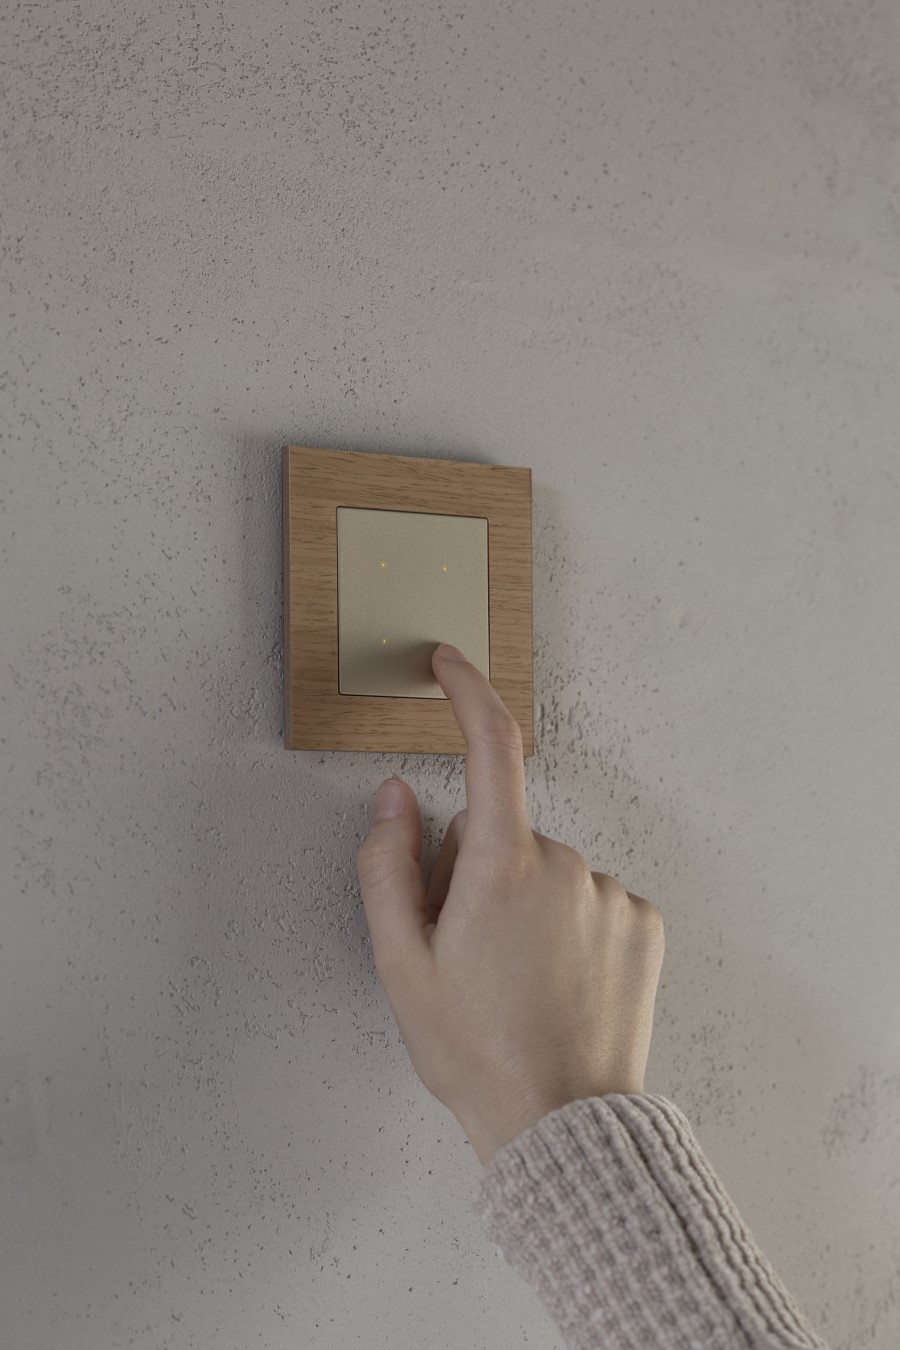 Dłoń obsługująca sterownik oświetlenia zamontowany na ścianie